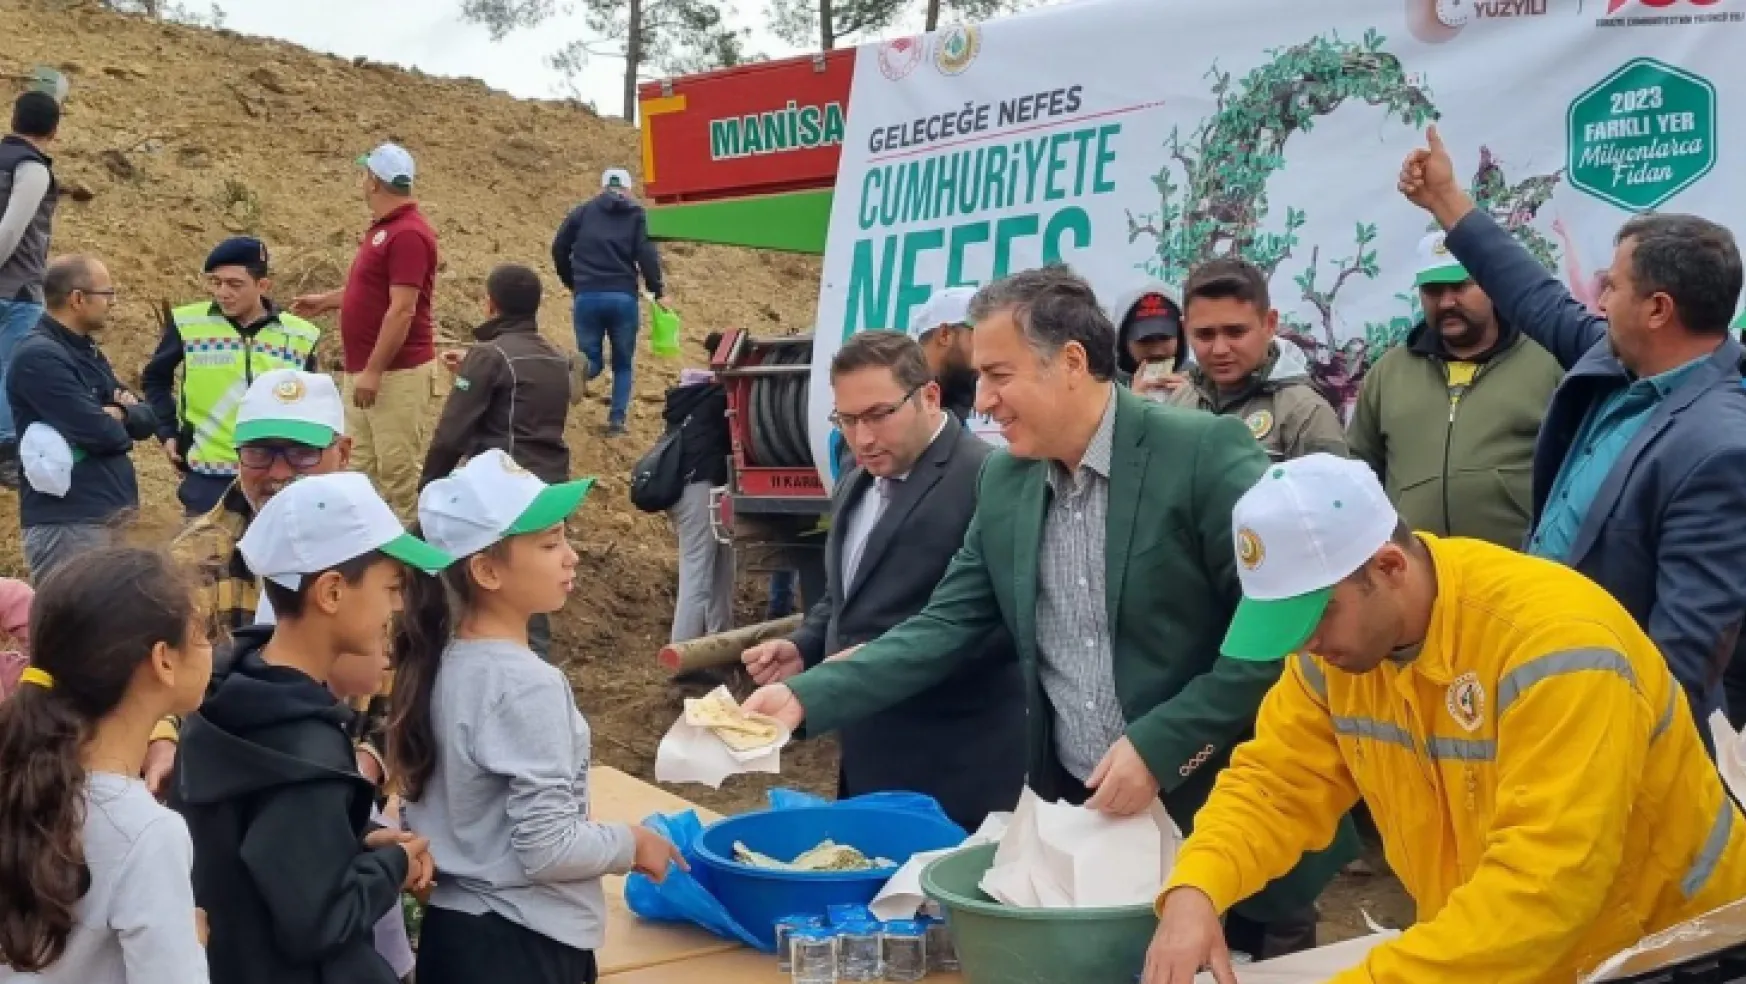 Turgutlu'da 'Geleceğe Nefes,Cumhuriyete Nefes'İçin 1500 Fidan Toprakla Buluştu